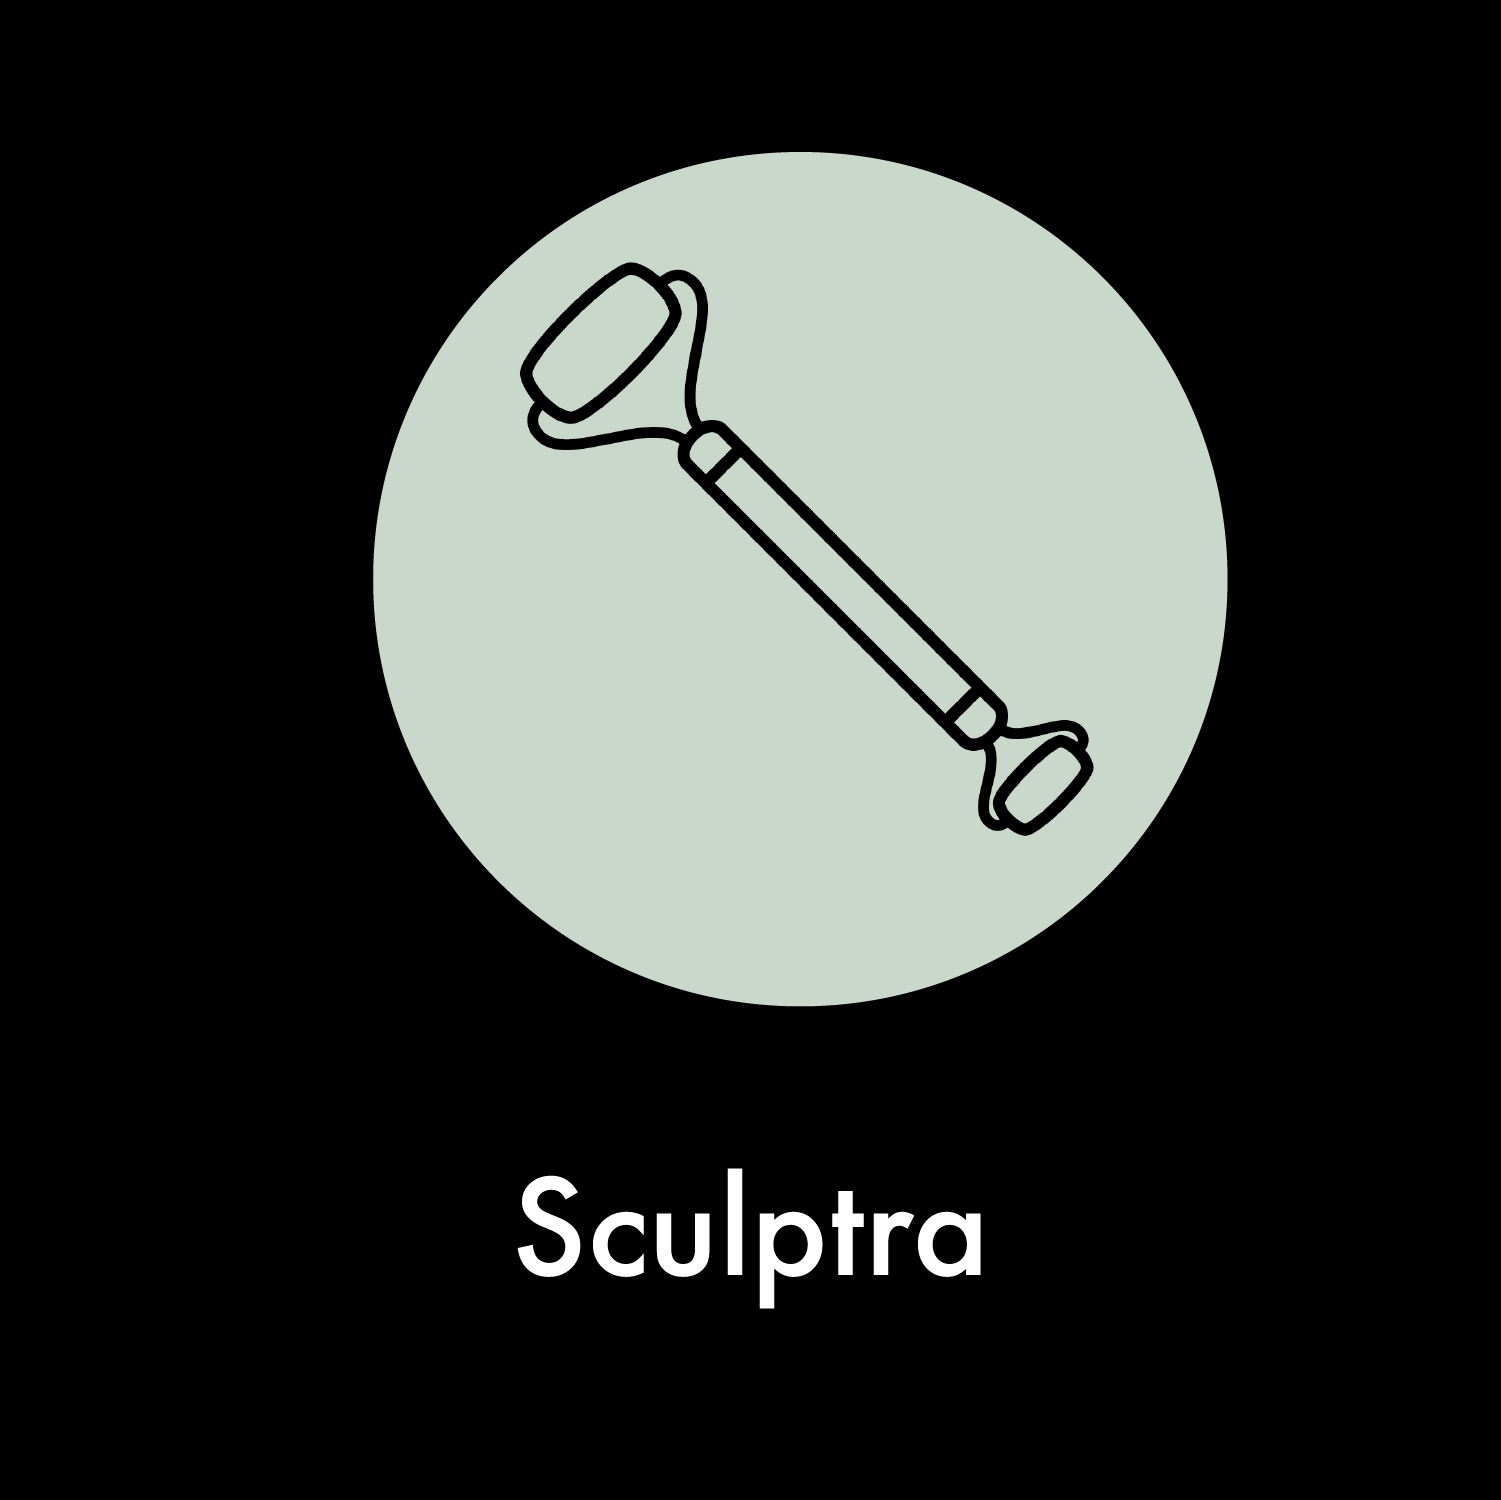 Facebar icons_Sculptra.png